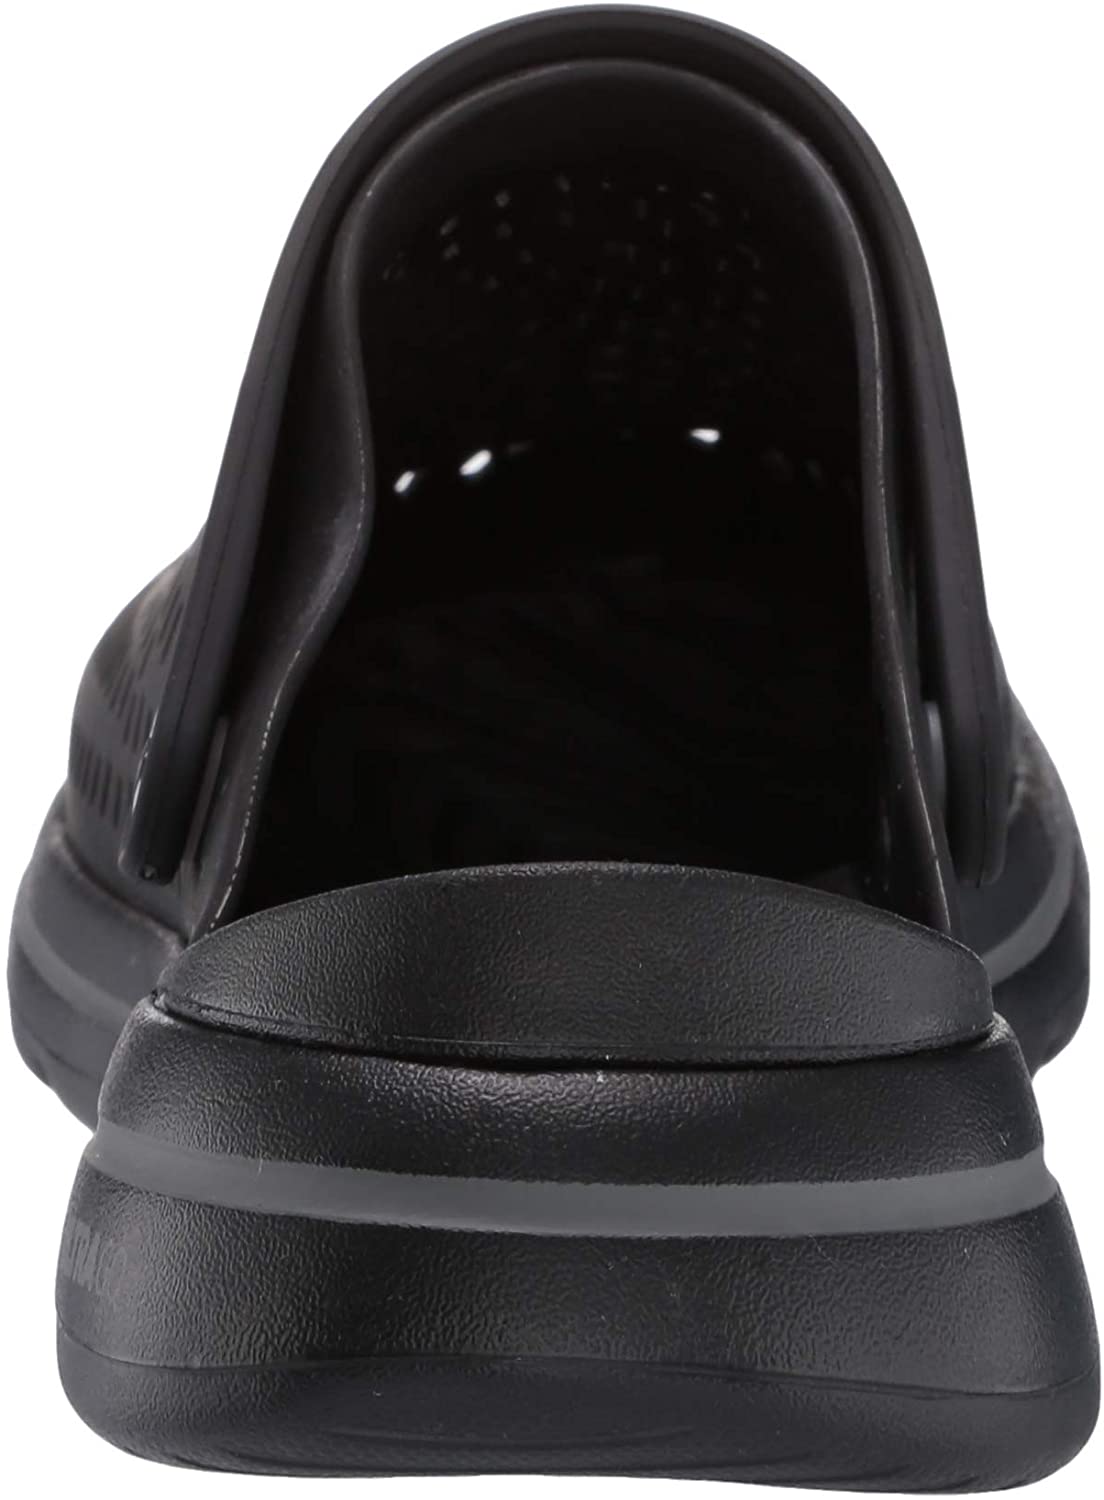 Skechers Women's Cali Gear Clog, Black, Size 8.0 bT2S | eBay